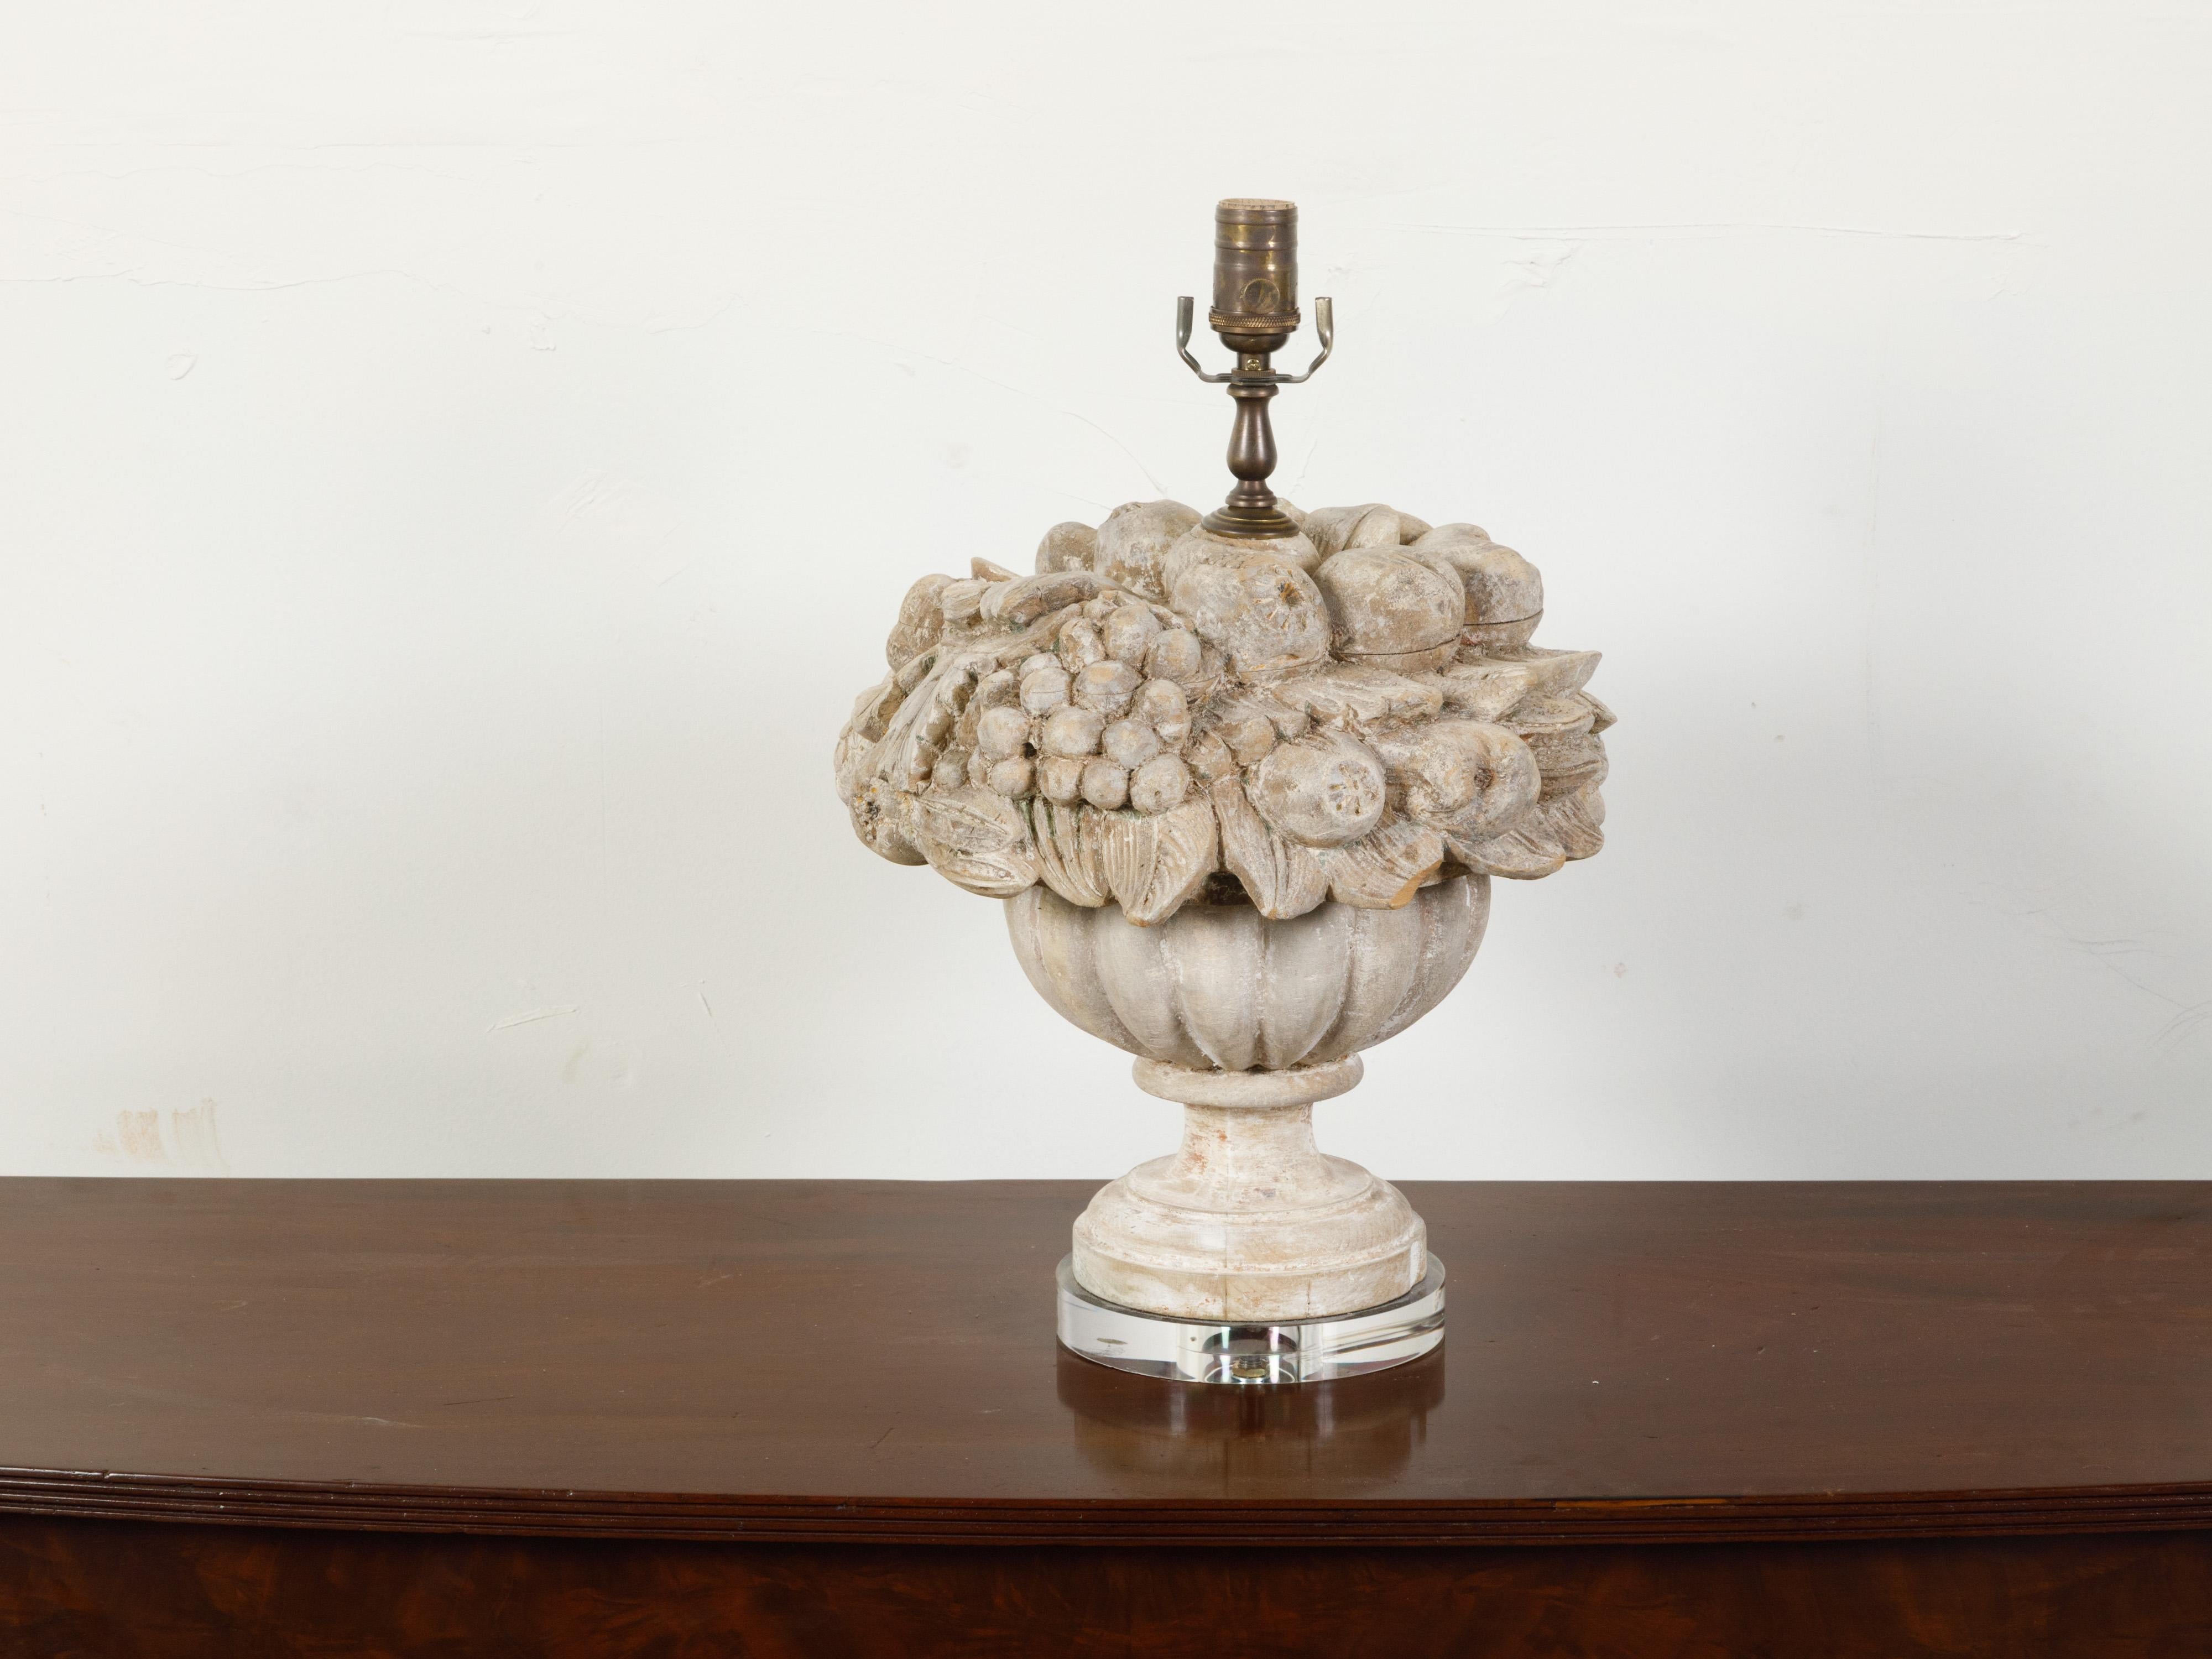 Lampe de table anglaise en bois sculpté du début du 20e siècle, représentant un récipient débordant de fruits et montée sur une base en lucite. Créée en Angleterre au cours de la première décennie du XXe siècle, cette sculpture nous charme par sa